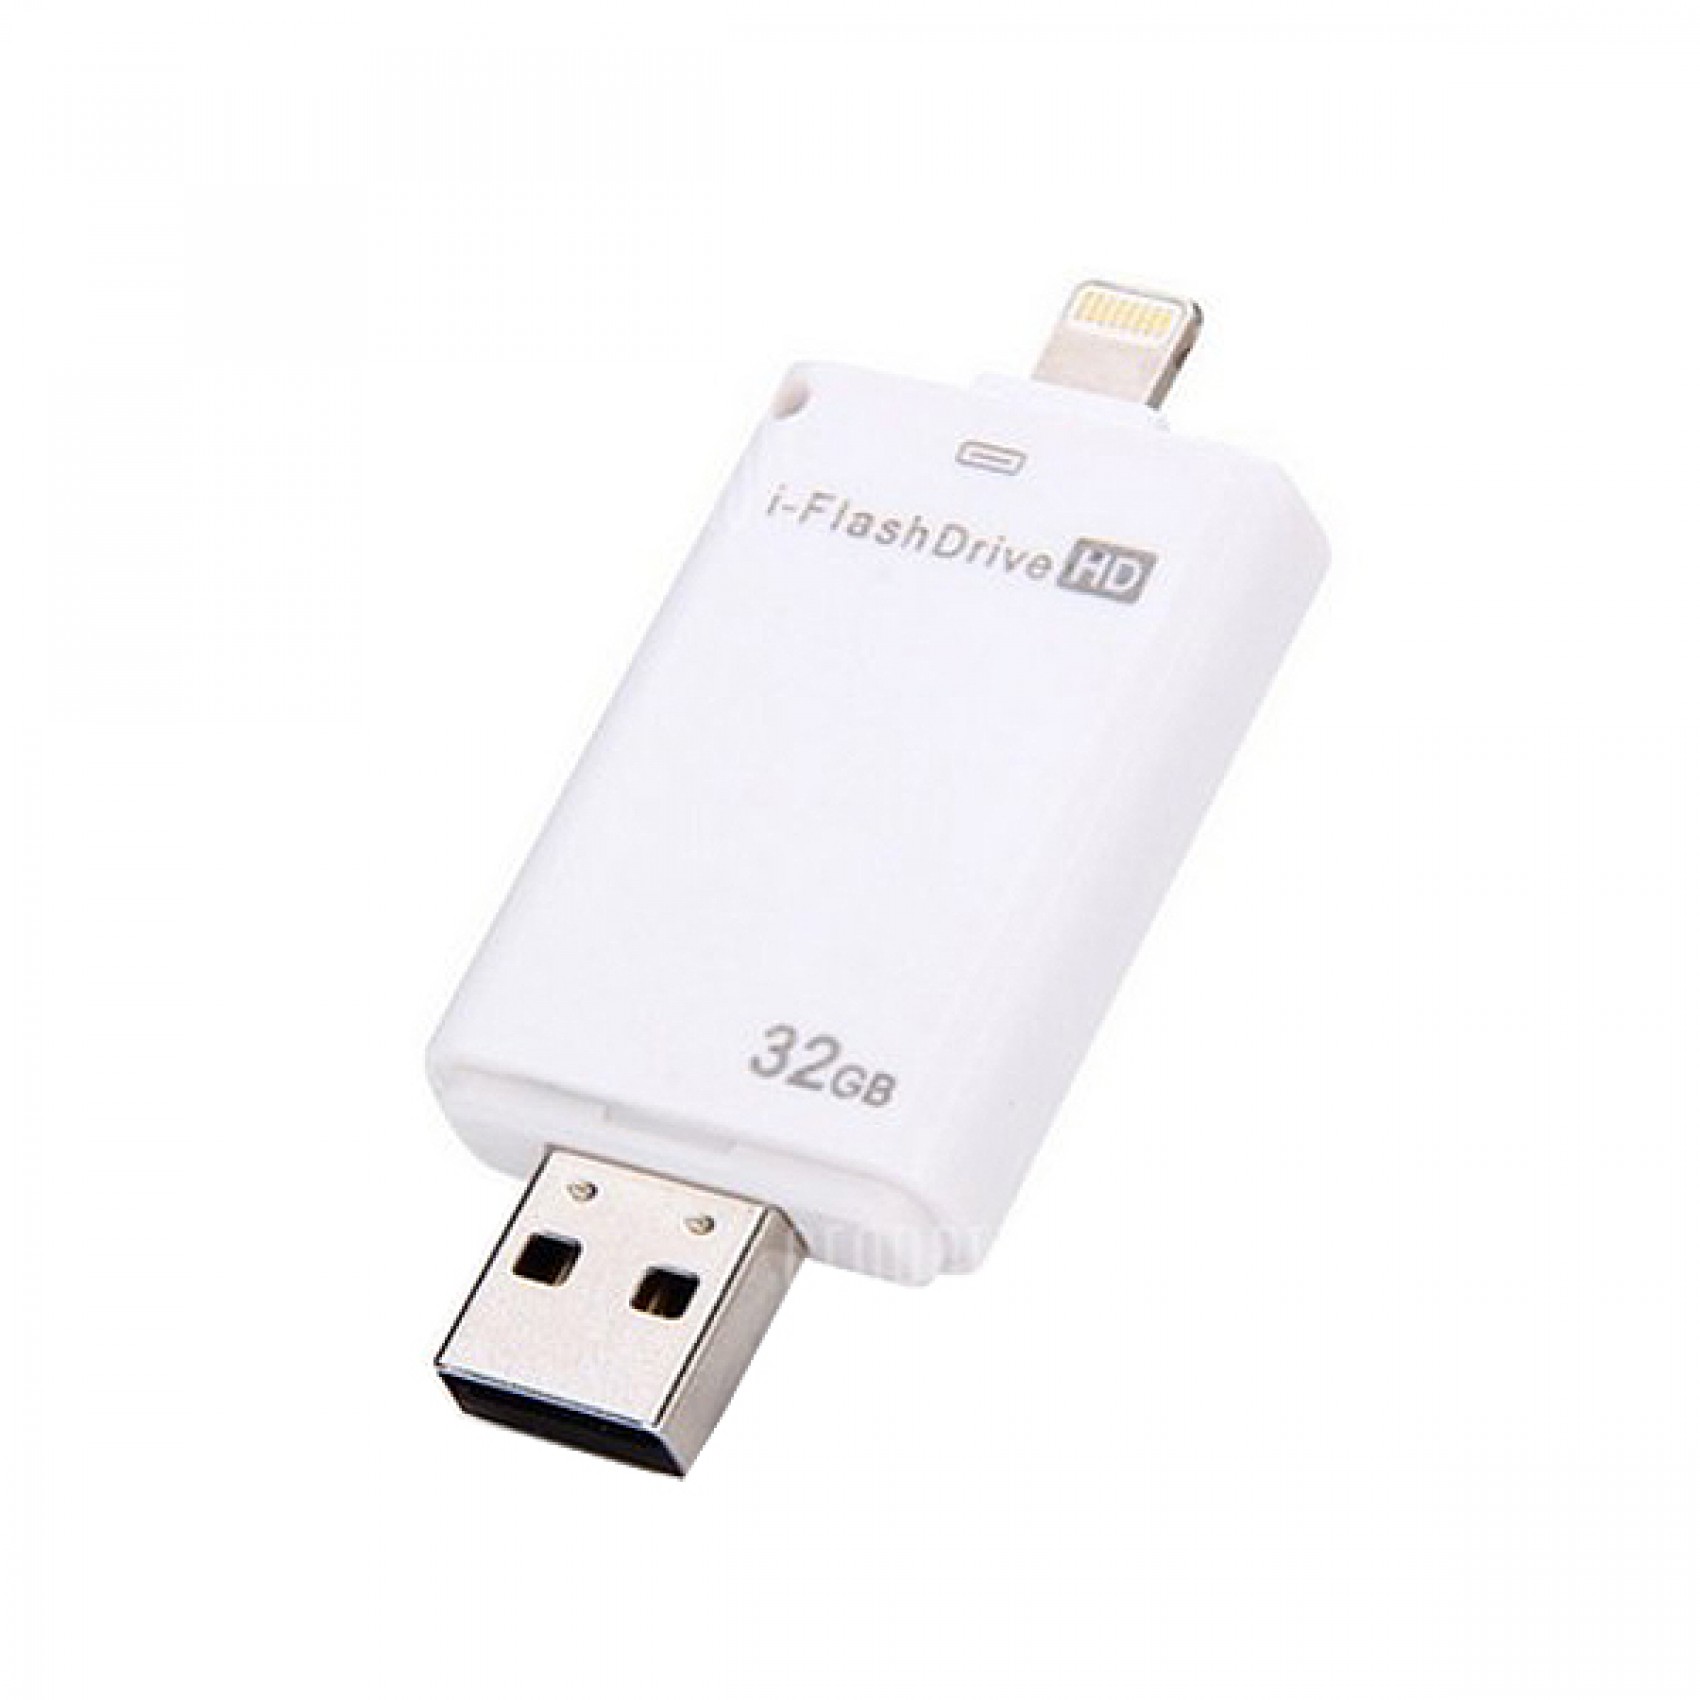 ΜΝΗΜΗ USB/LIGHTNING I-FLASH HD